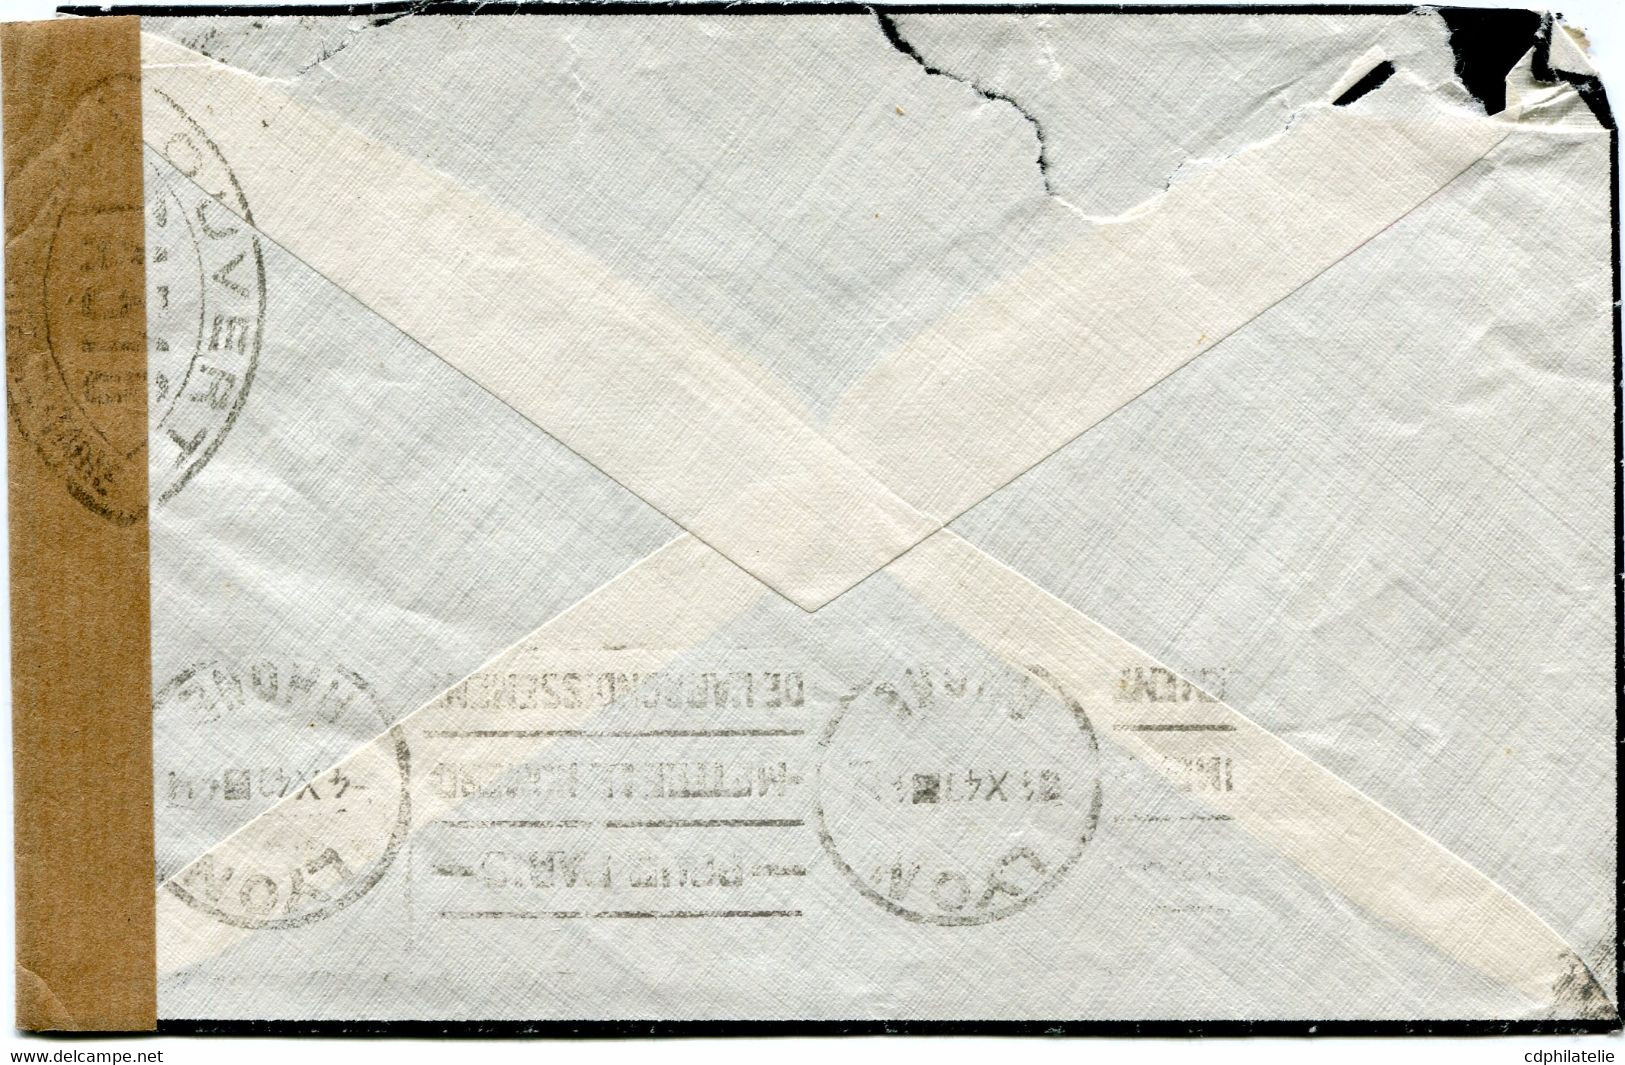 FRANCE LETTRE PAR AVION CENSUREE DEPART LYON-GROLEE 3-10-40 RHONE POUR L'ALGERIE - 1939-44 Iris